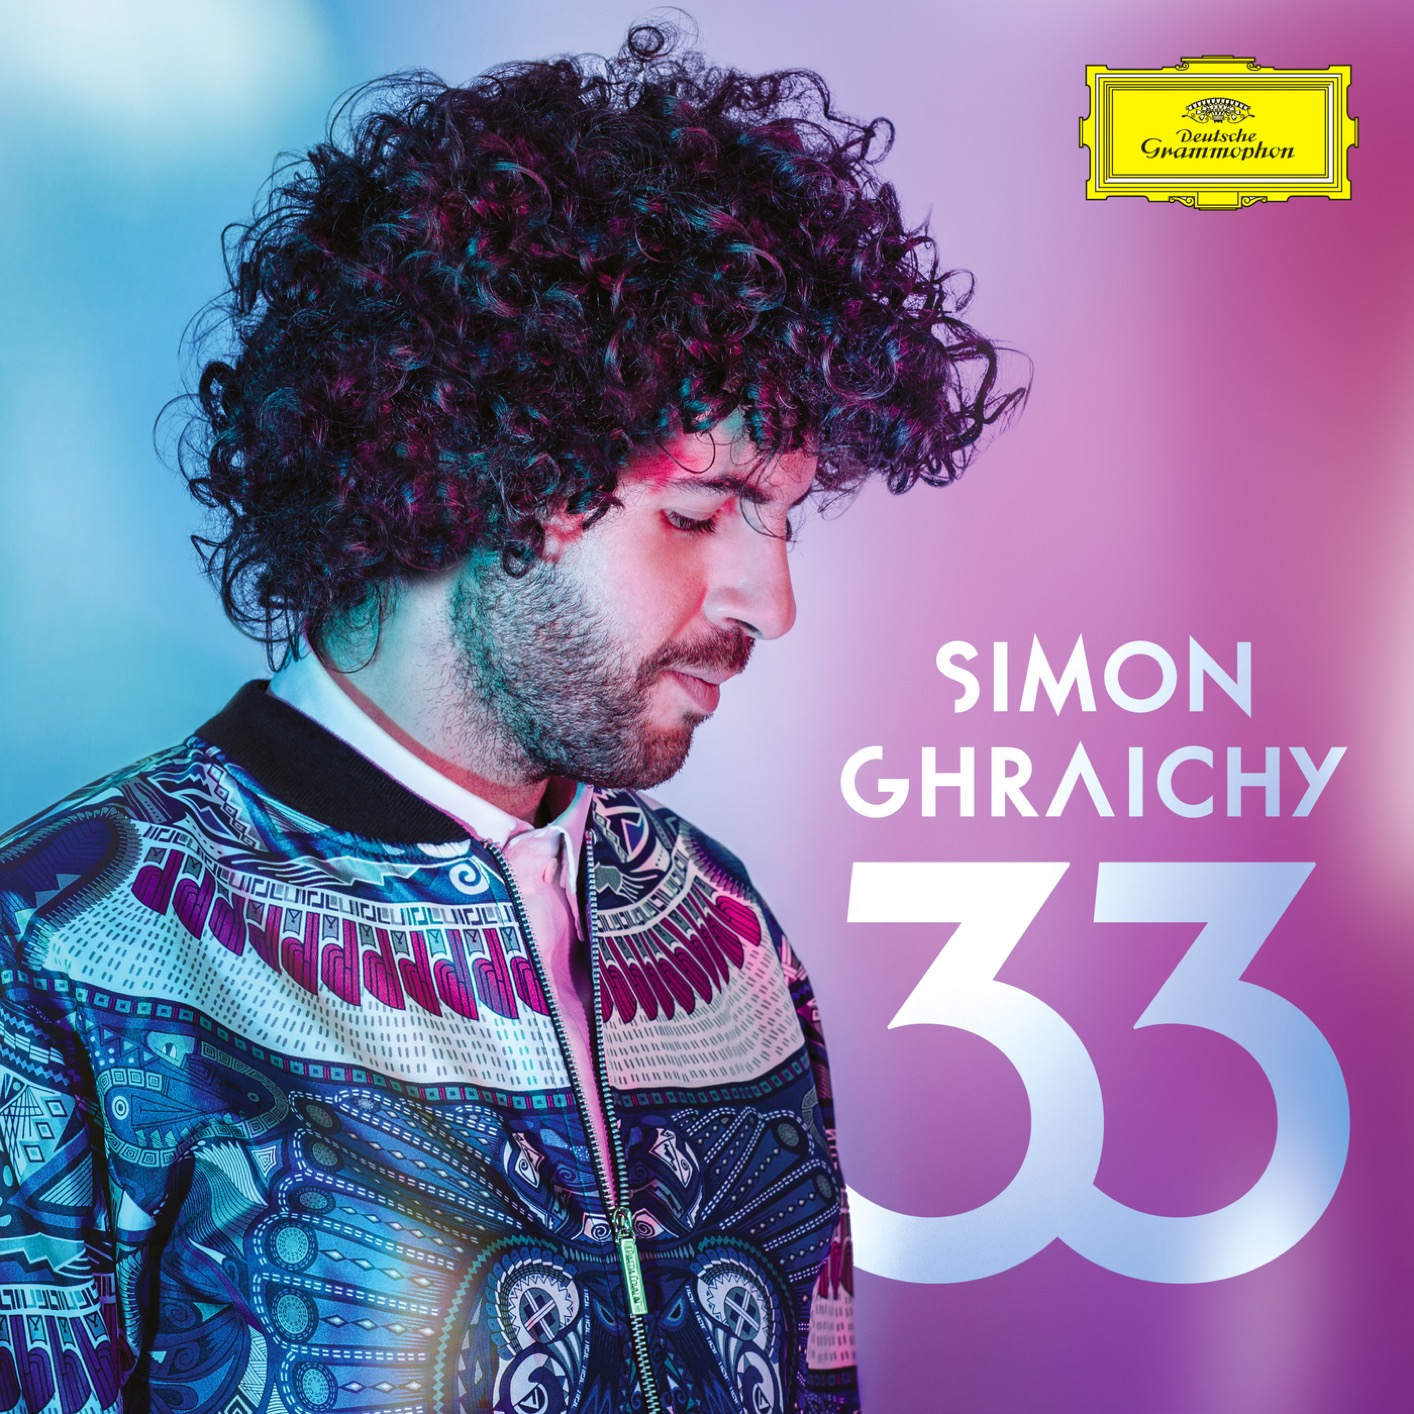 Simon Ghraichy - 33 (2019) [FLAC 24bit/96kHz]